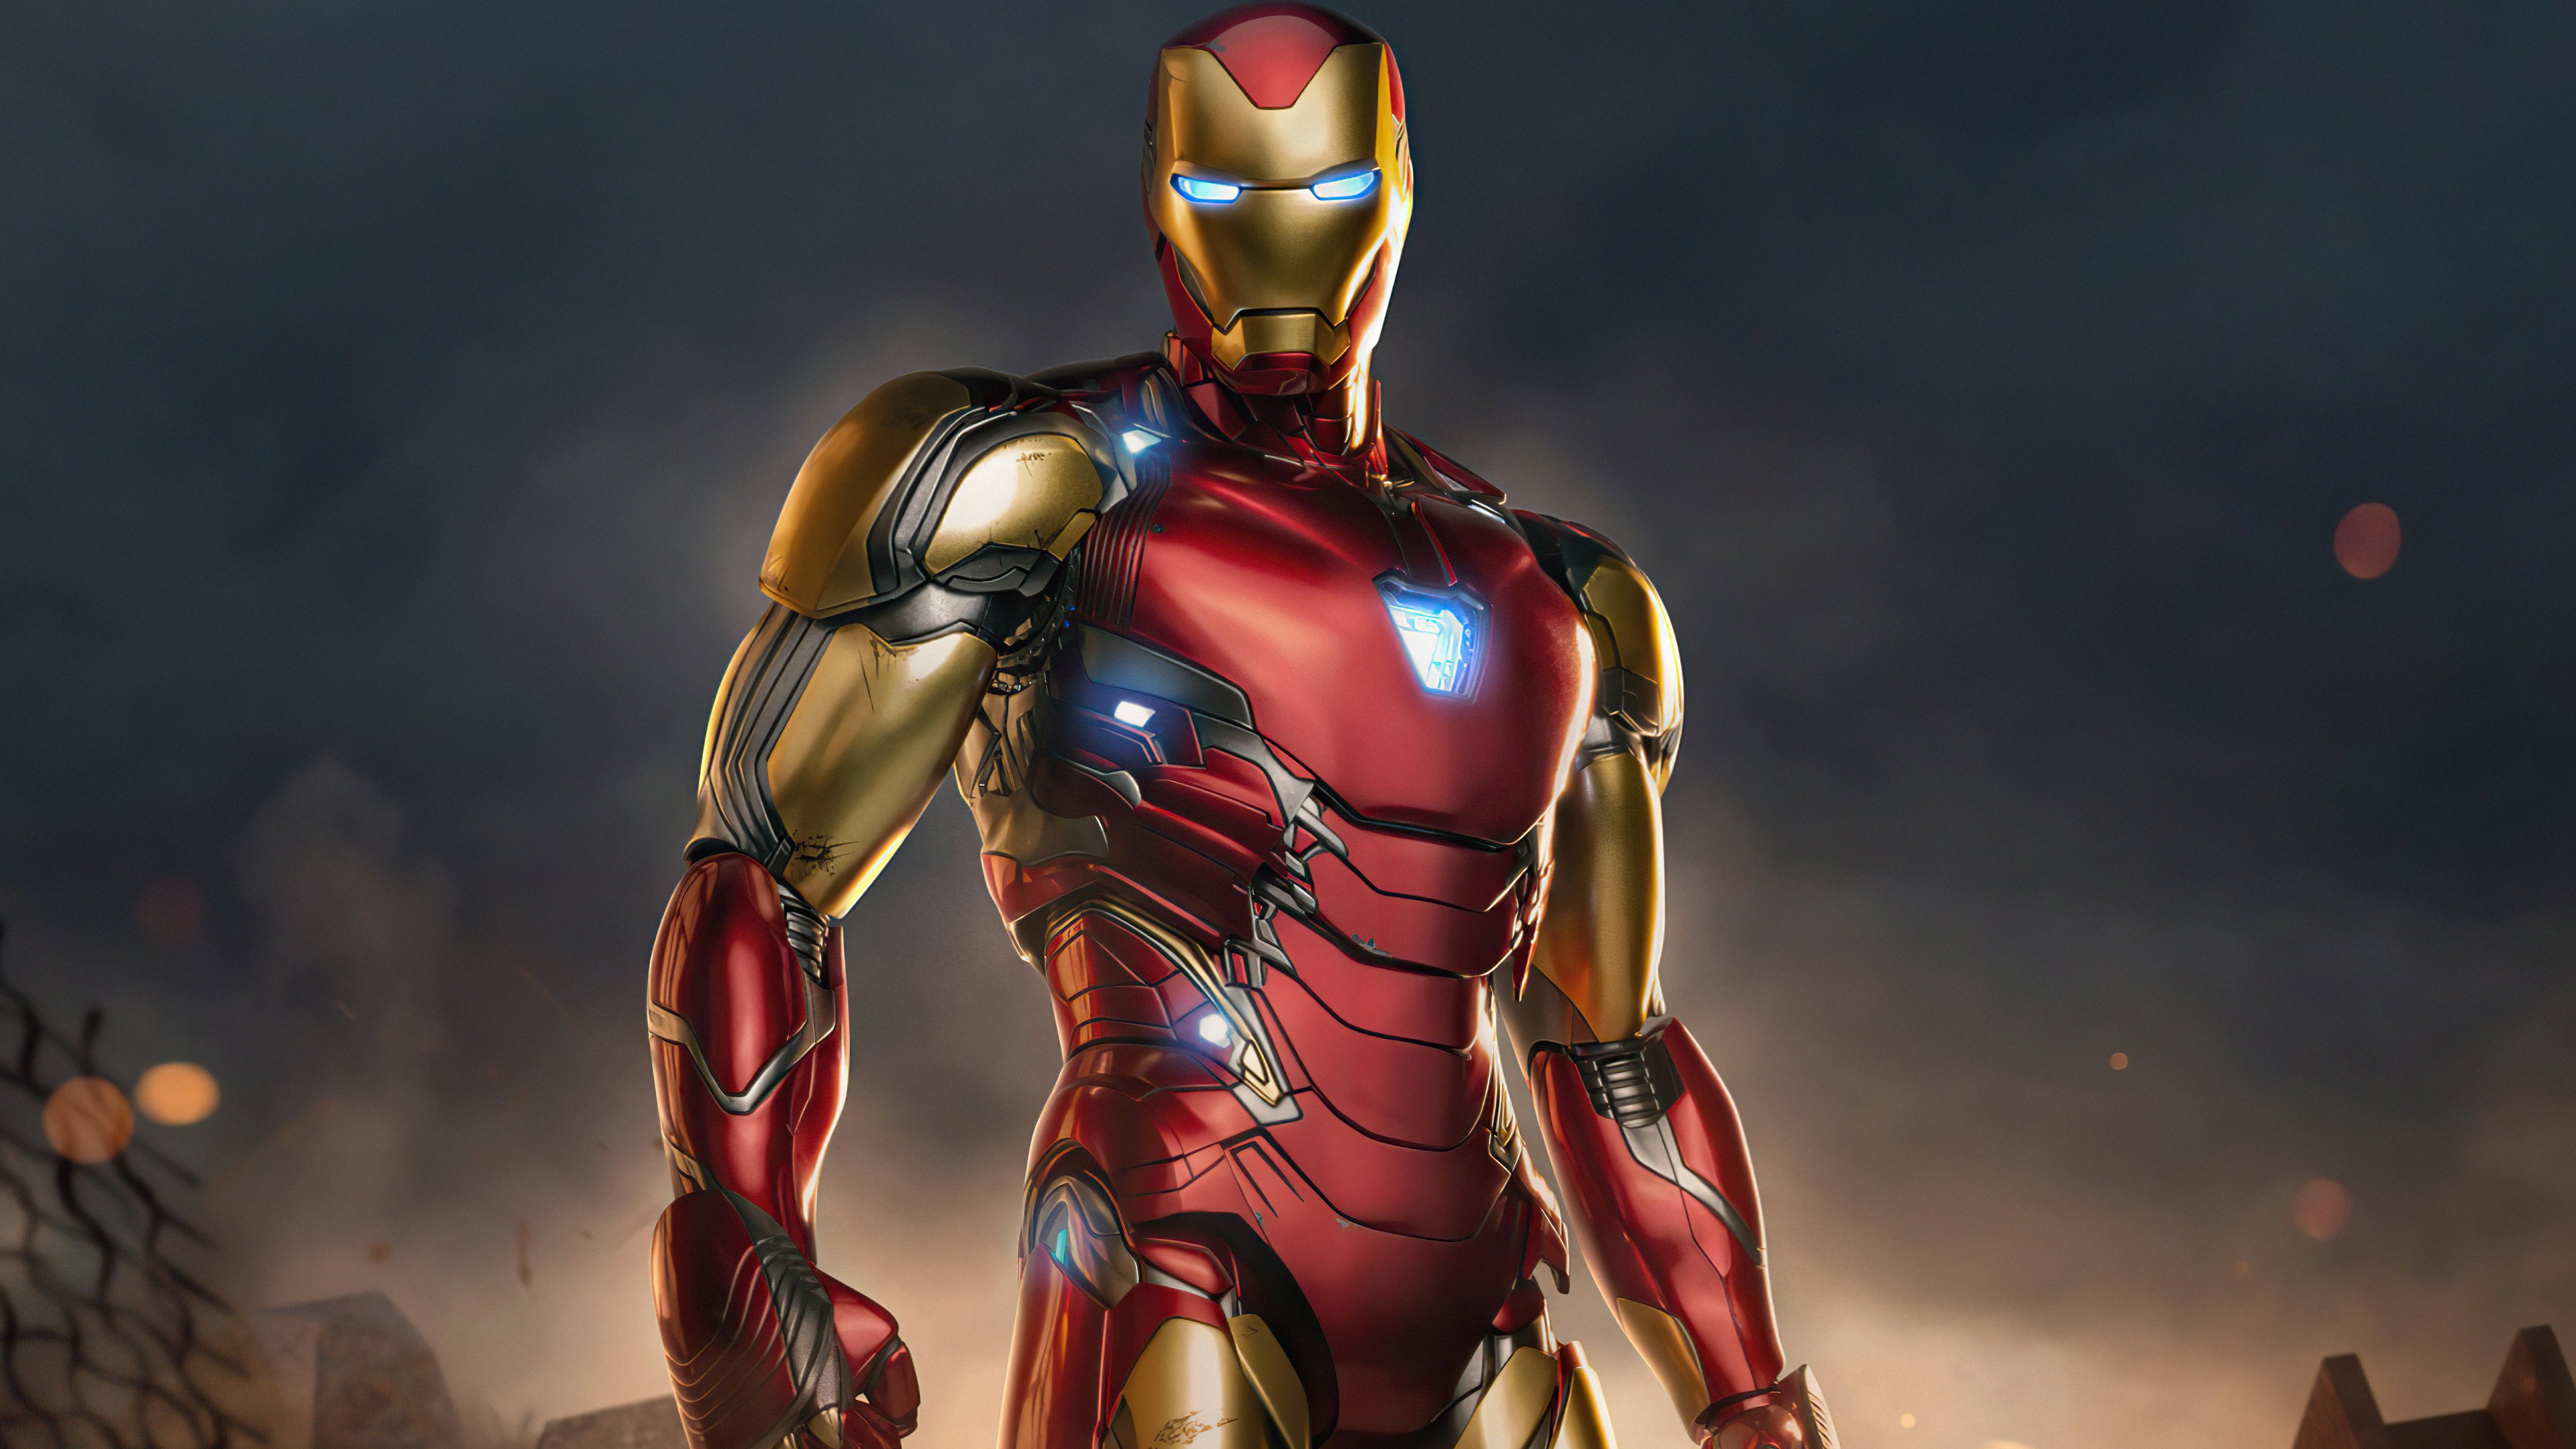 Tony Stark Iron Man 2021 Wallpaper 5k Ultra HD ID:7056